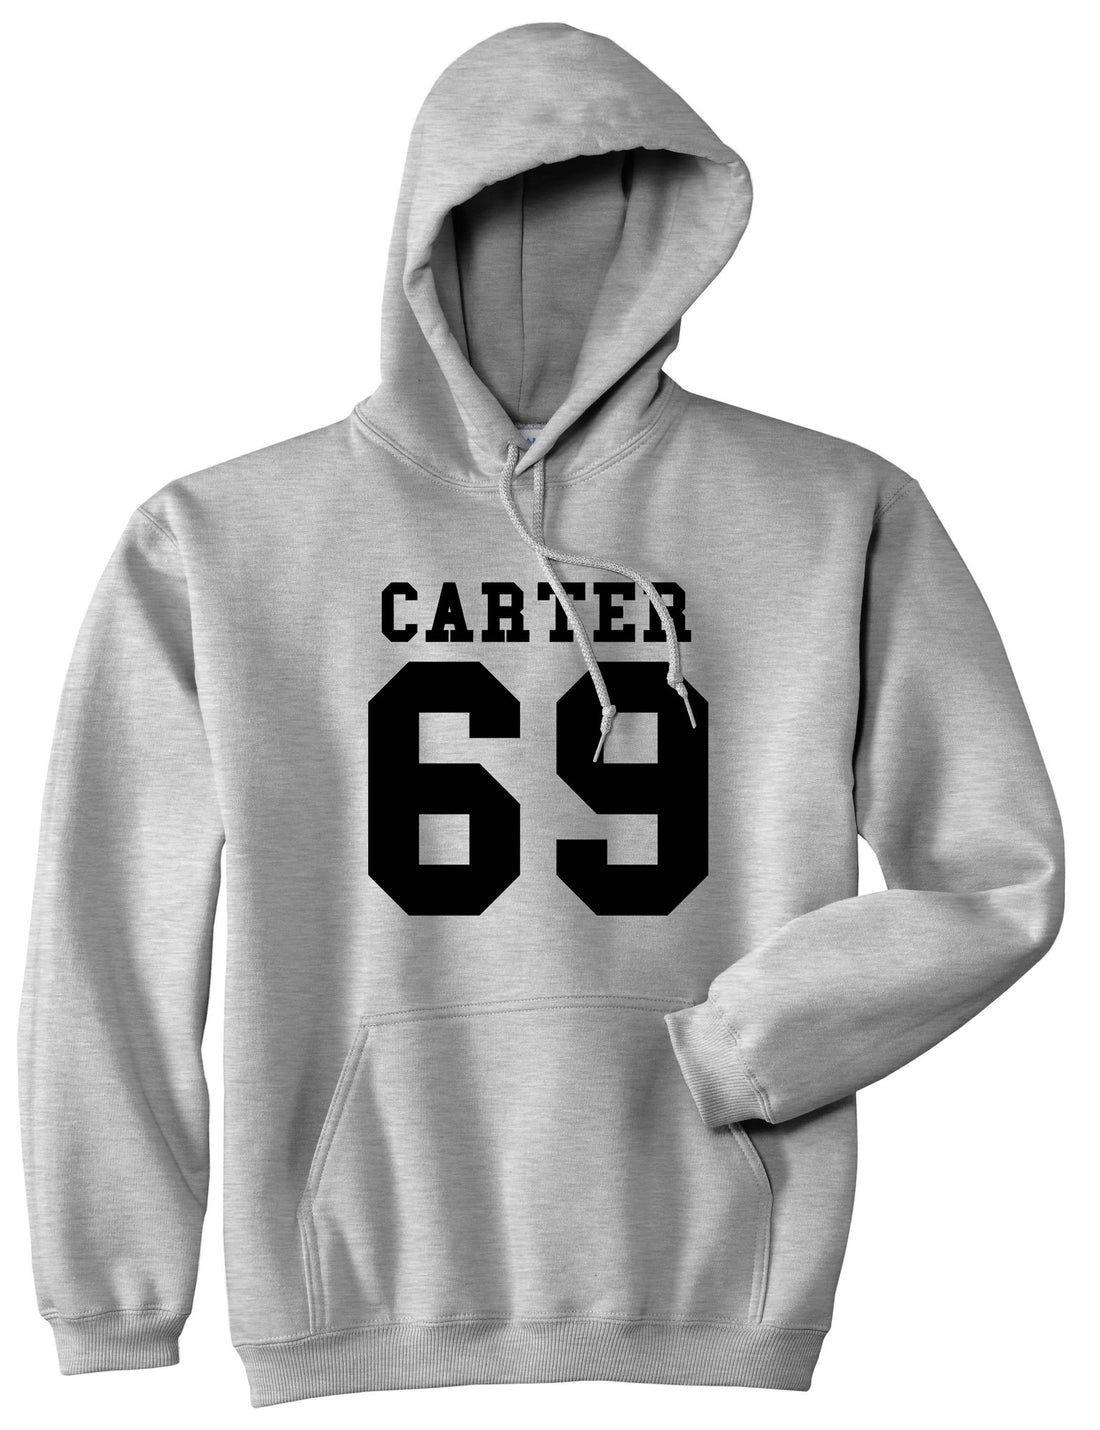  Carter 69 Team Pullover Hoodie Hoody in Grey by Kings Of NY